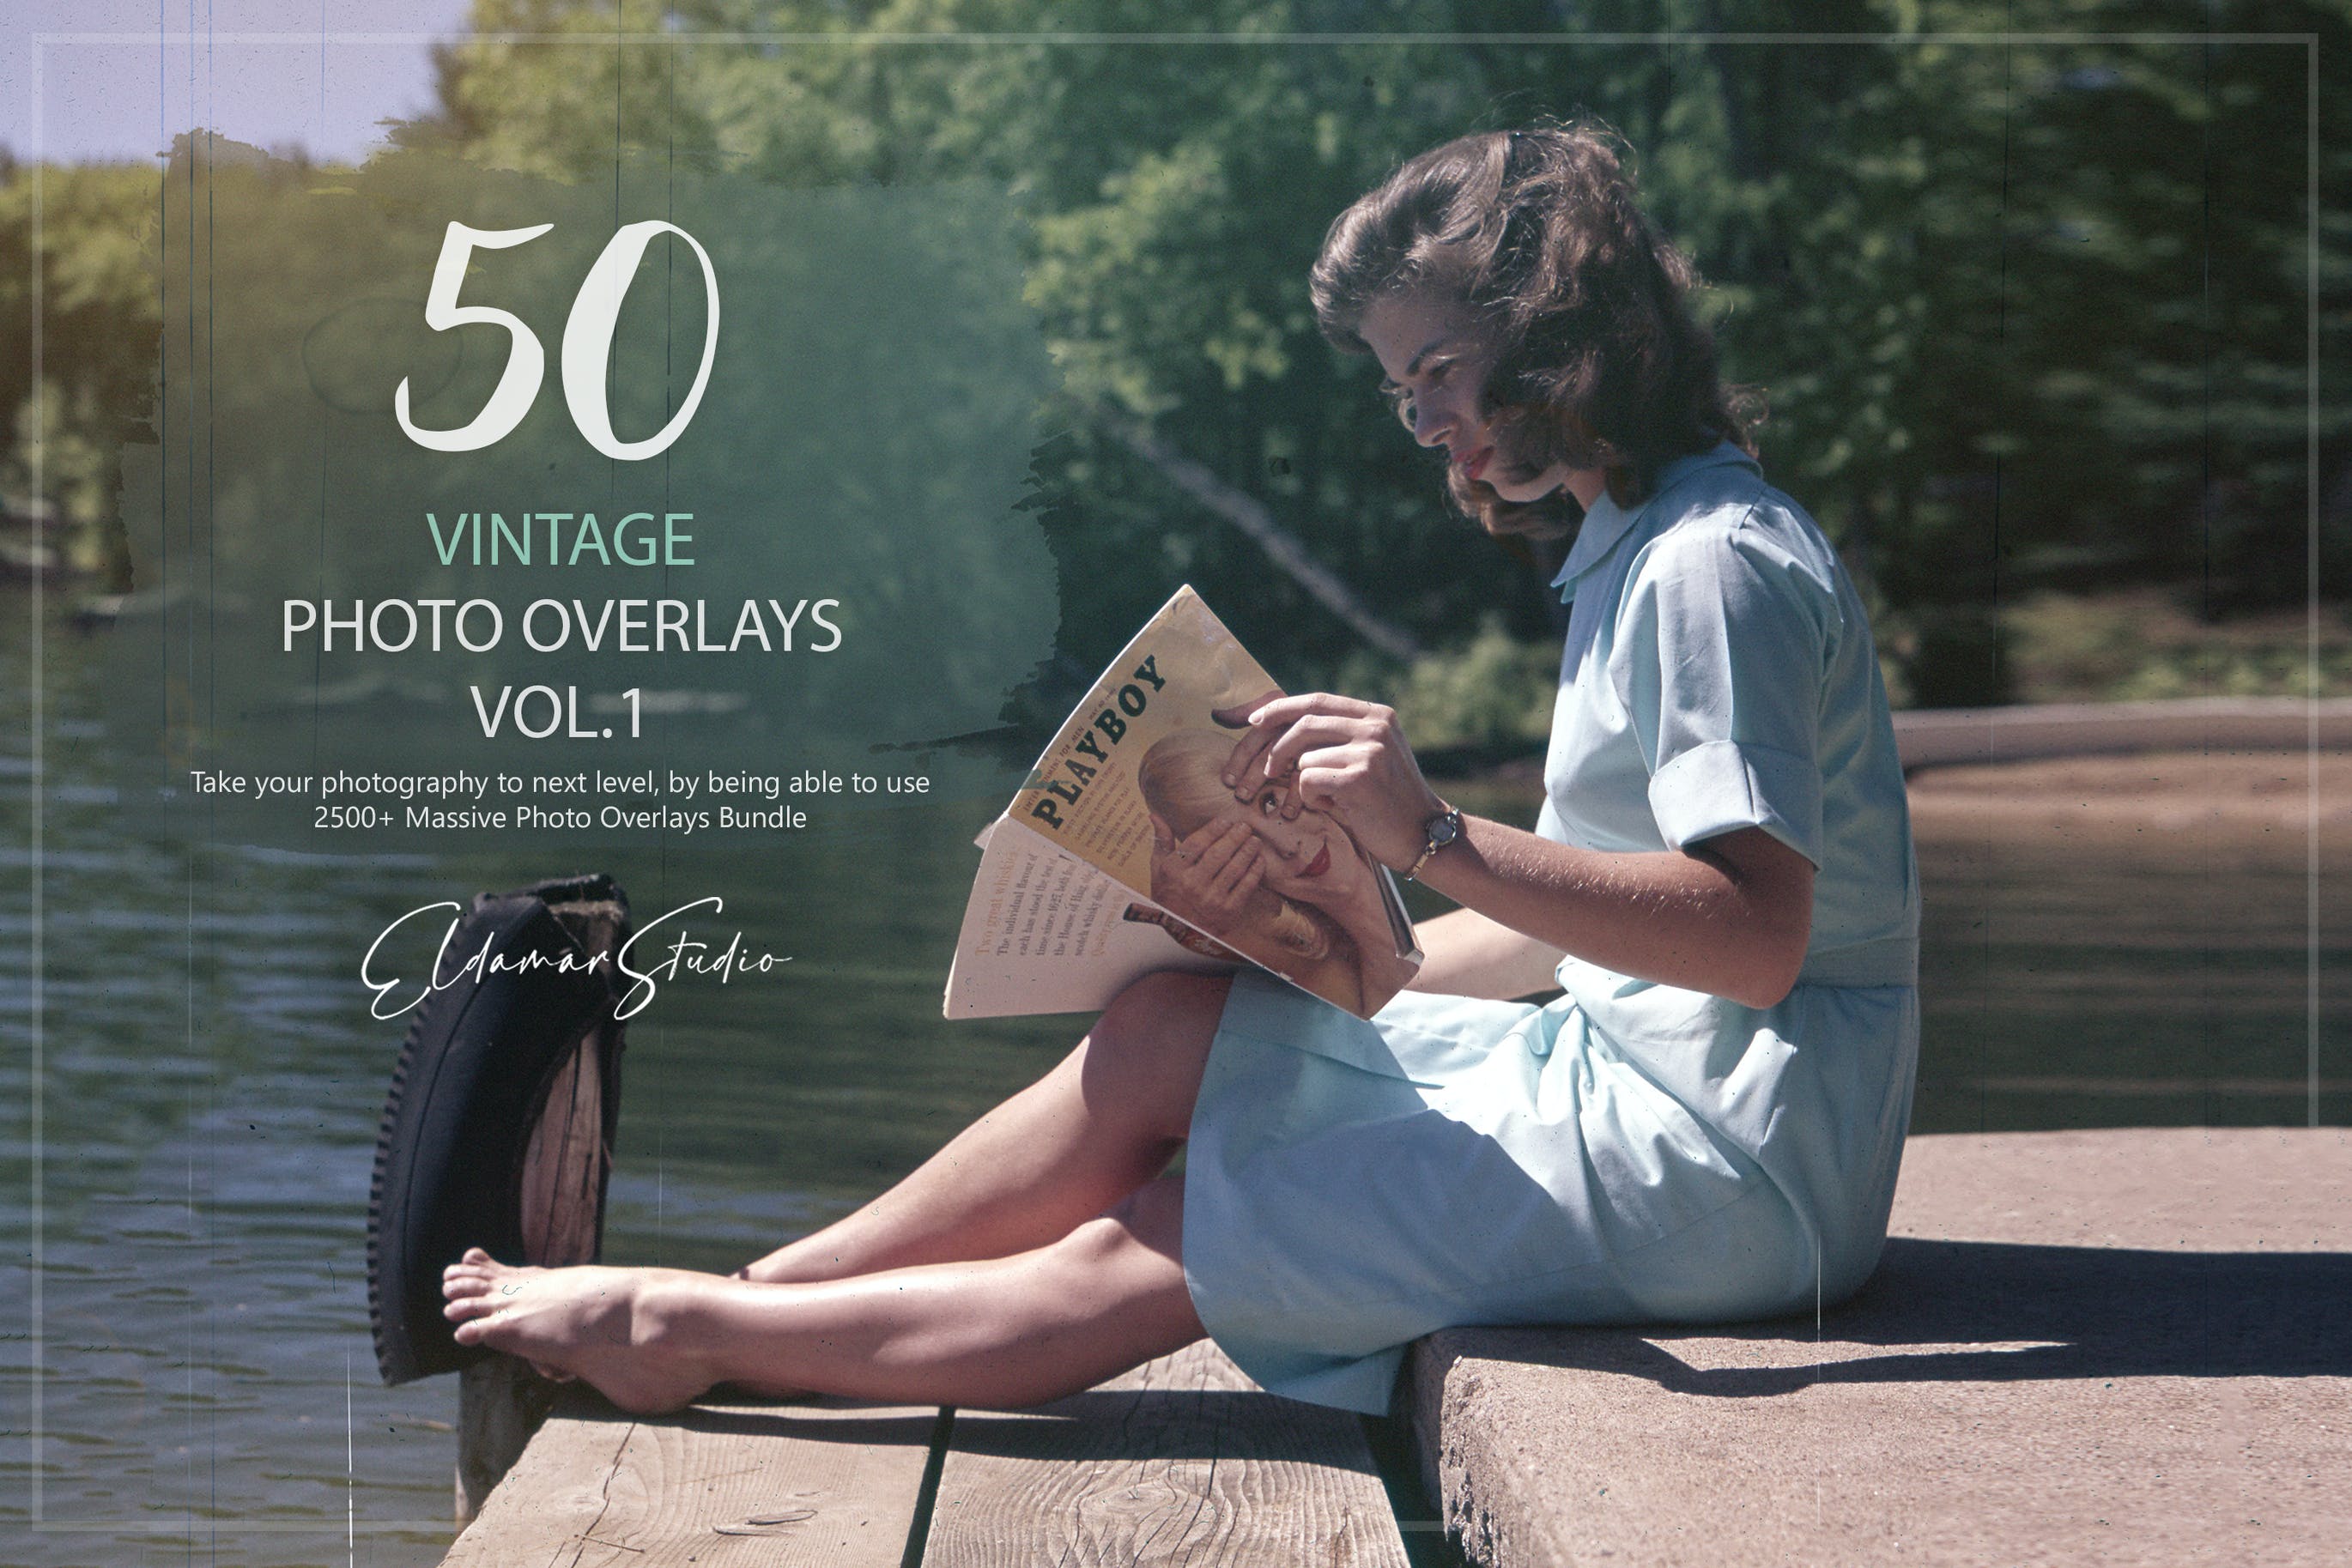 50个复古照片叠层背景素材v1 50 Vintage Photo Overlays – Vol. 1 图片素材 第1张